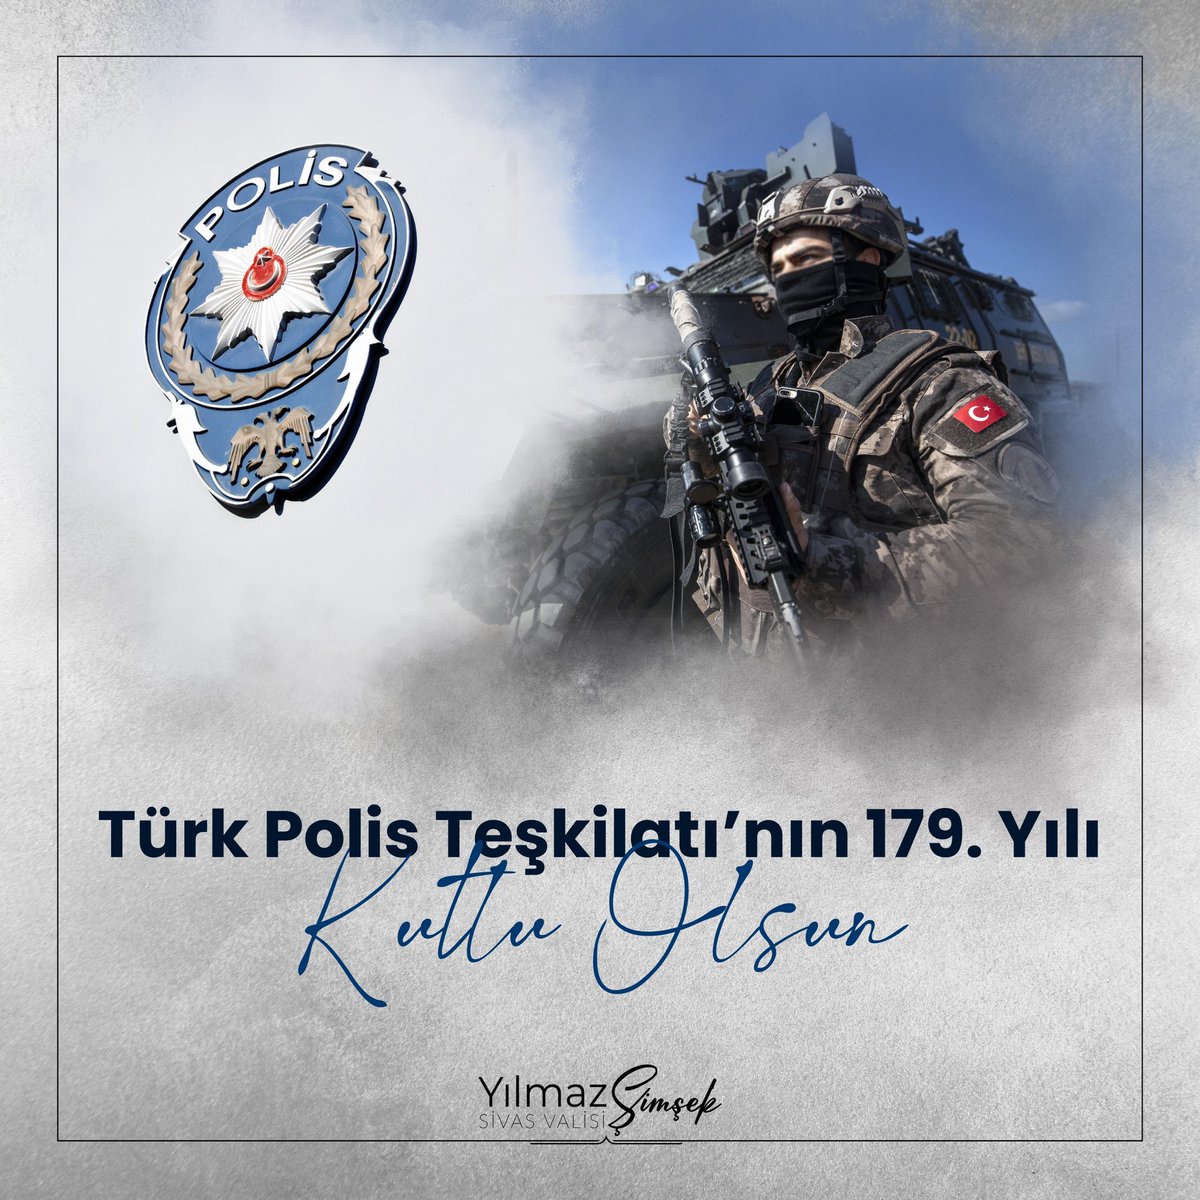 Türk Polis Teşkilatı 179 Yaşında 🇹🇷 Vatanımızın bekası ve halkımızın huzuru için her koşulda, fedakarca görev yapan “Türk Polis Teşkilatı”nın kuruluş yıldönümü kutlu olsun. #TürkPolisTeşkilatı179Yaşında 🇹🇷🚔👮🏻